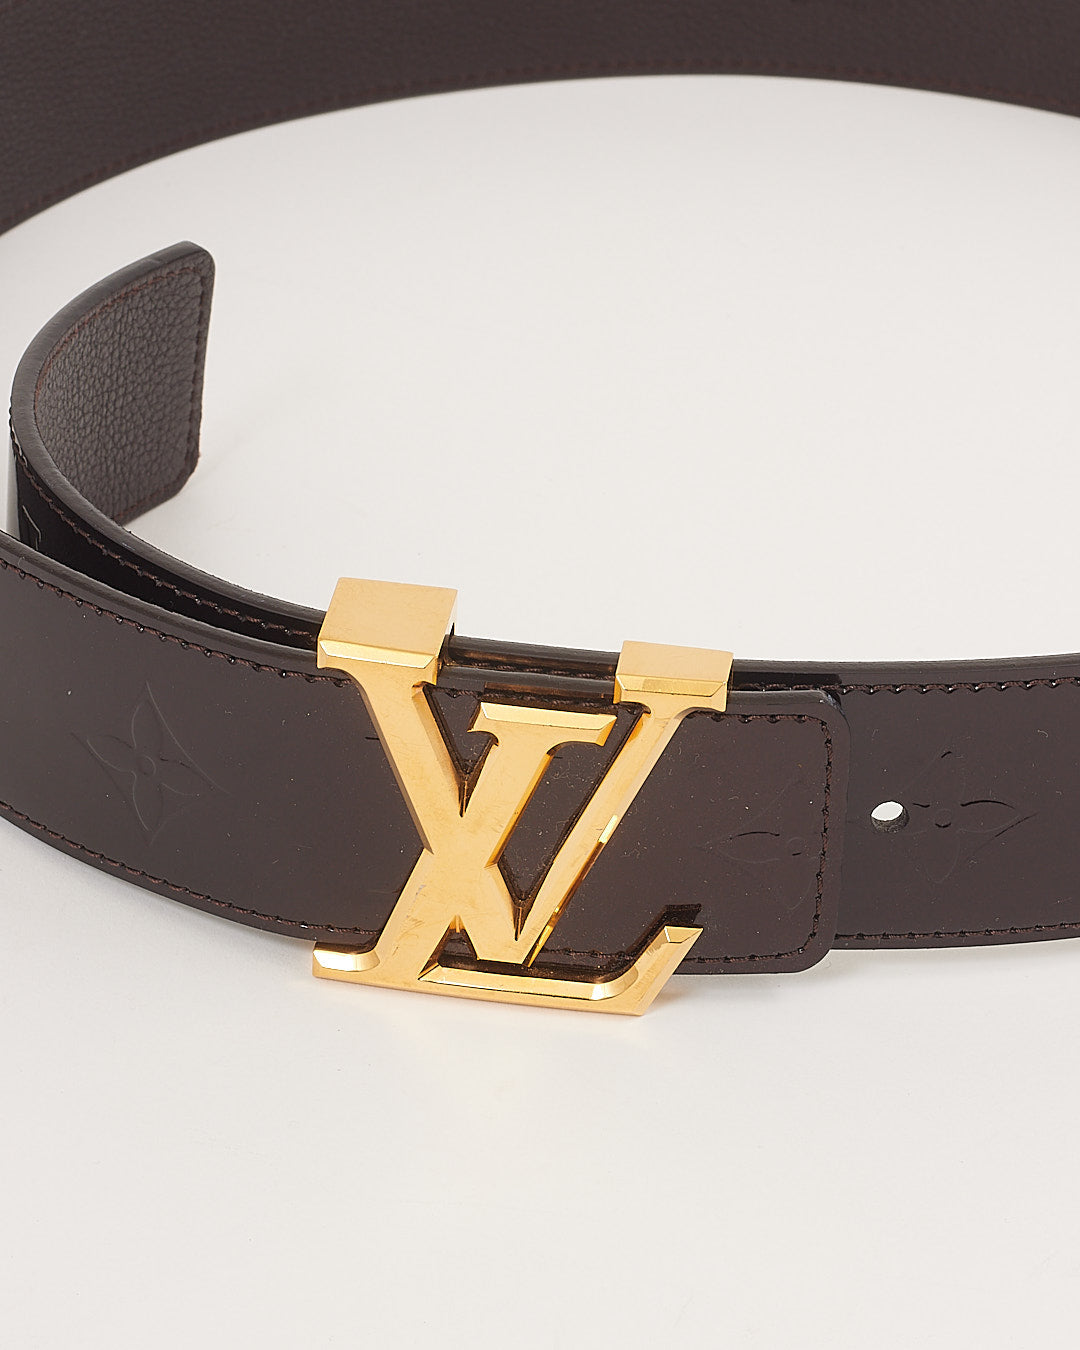 Louis Vuitton Vernis Amarante Monogram Belt - 85/34